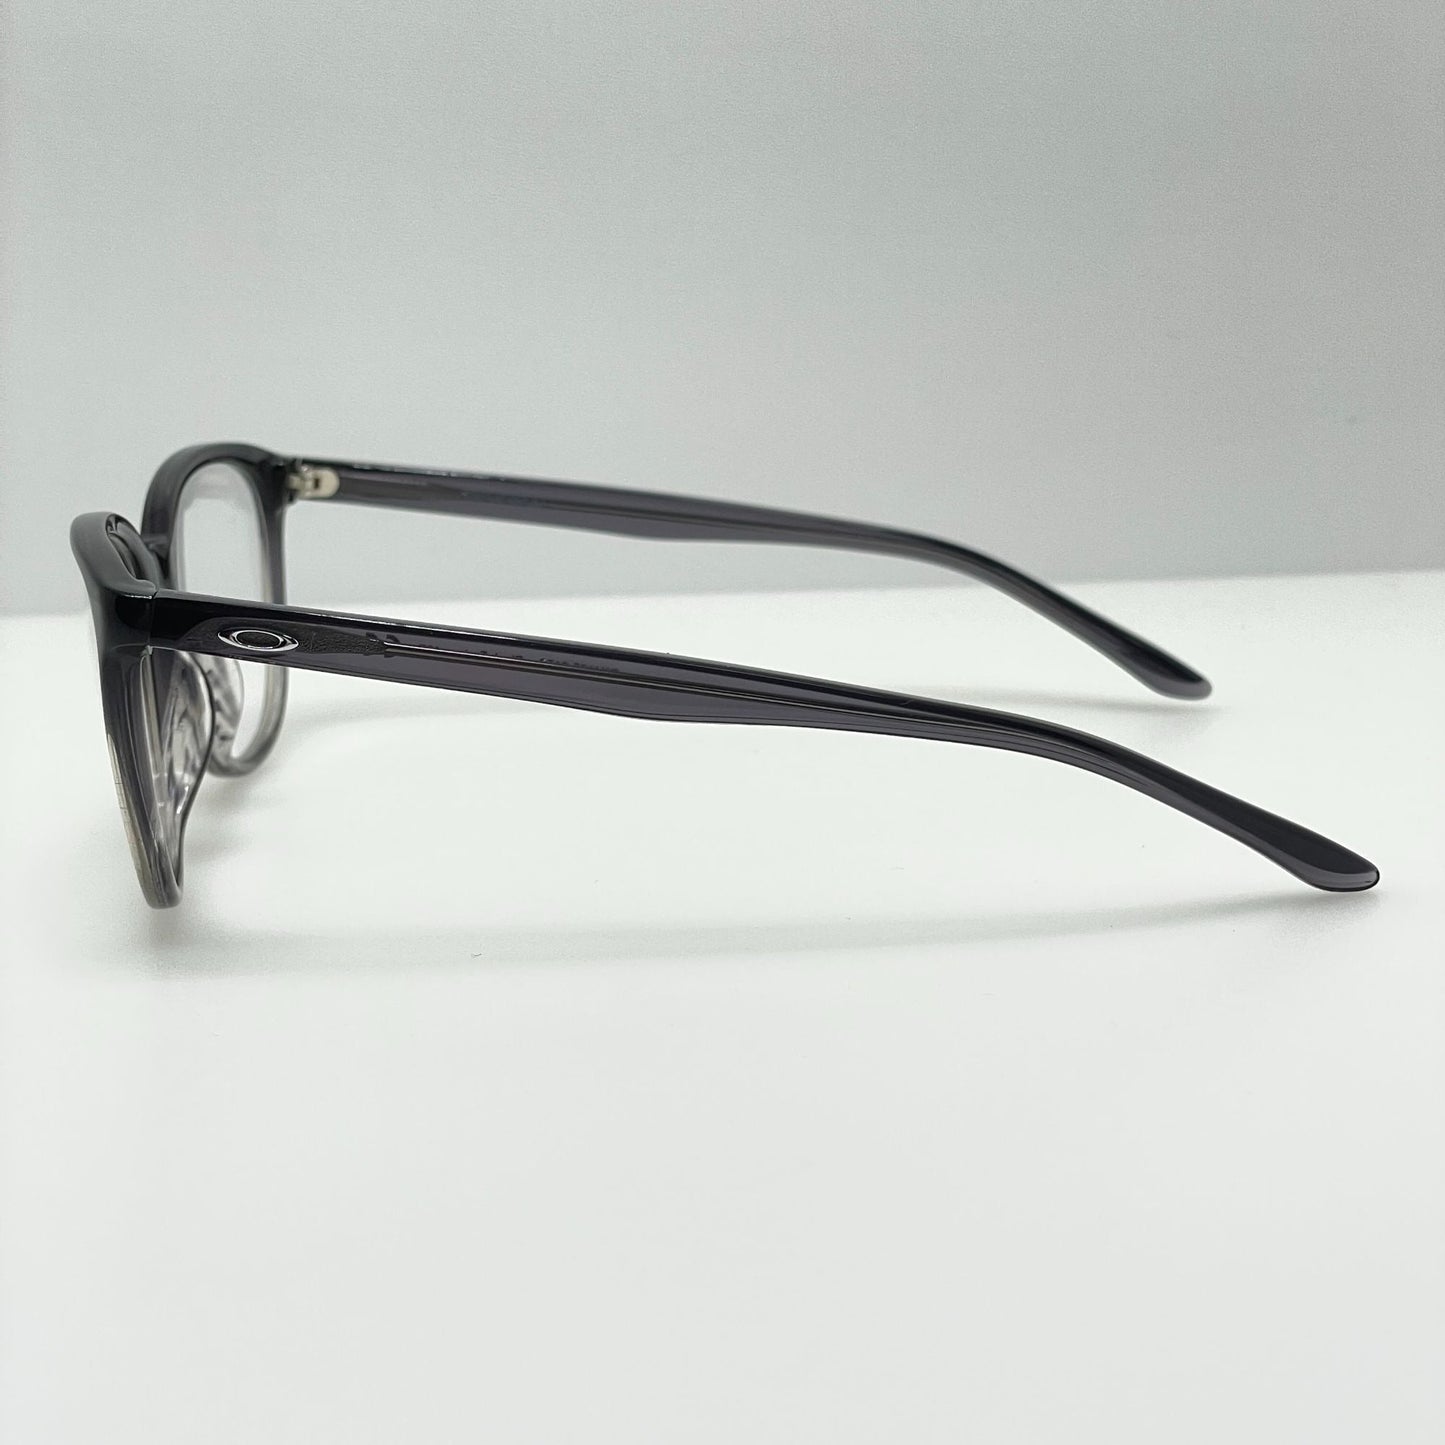 Oakley Eyeglasses Eye Glasses Frames OX1135-0152 Reversal 52-17-137 Black Fade